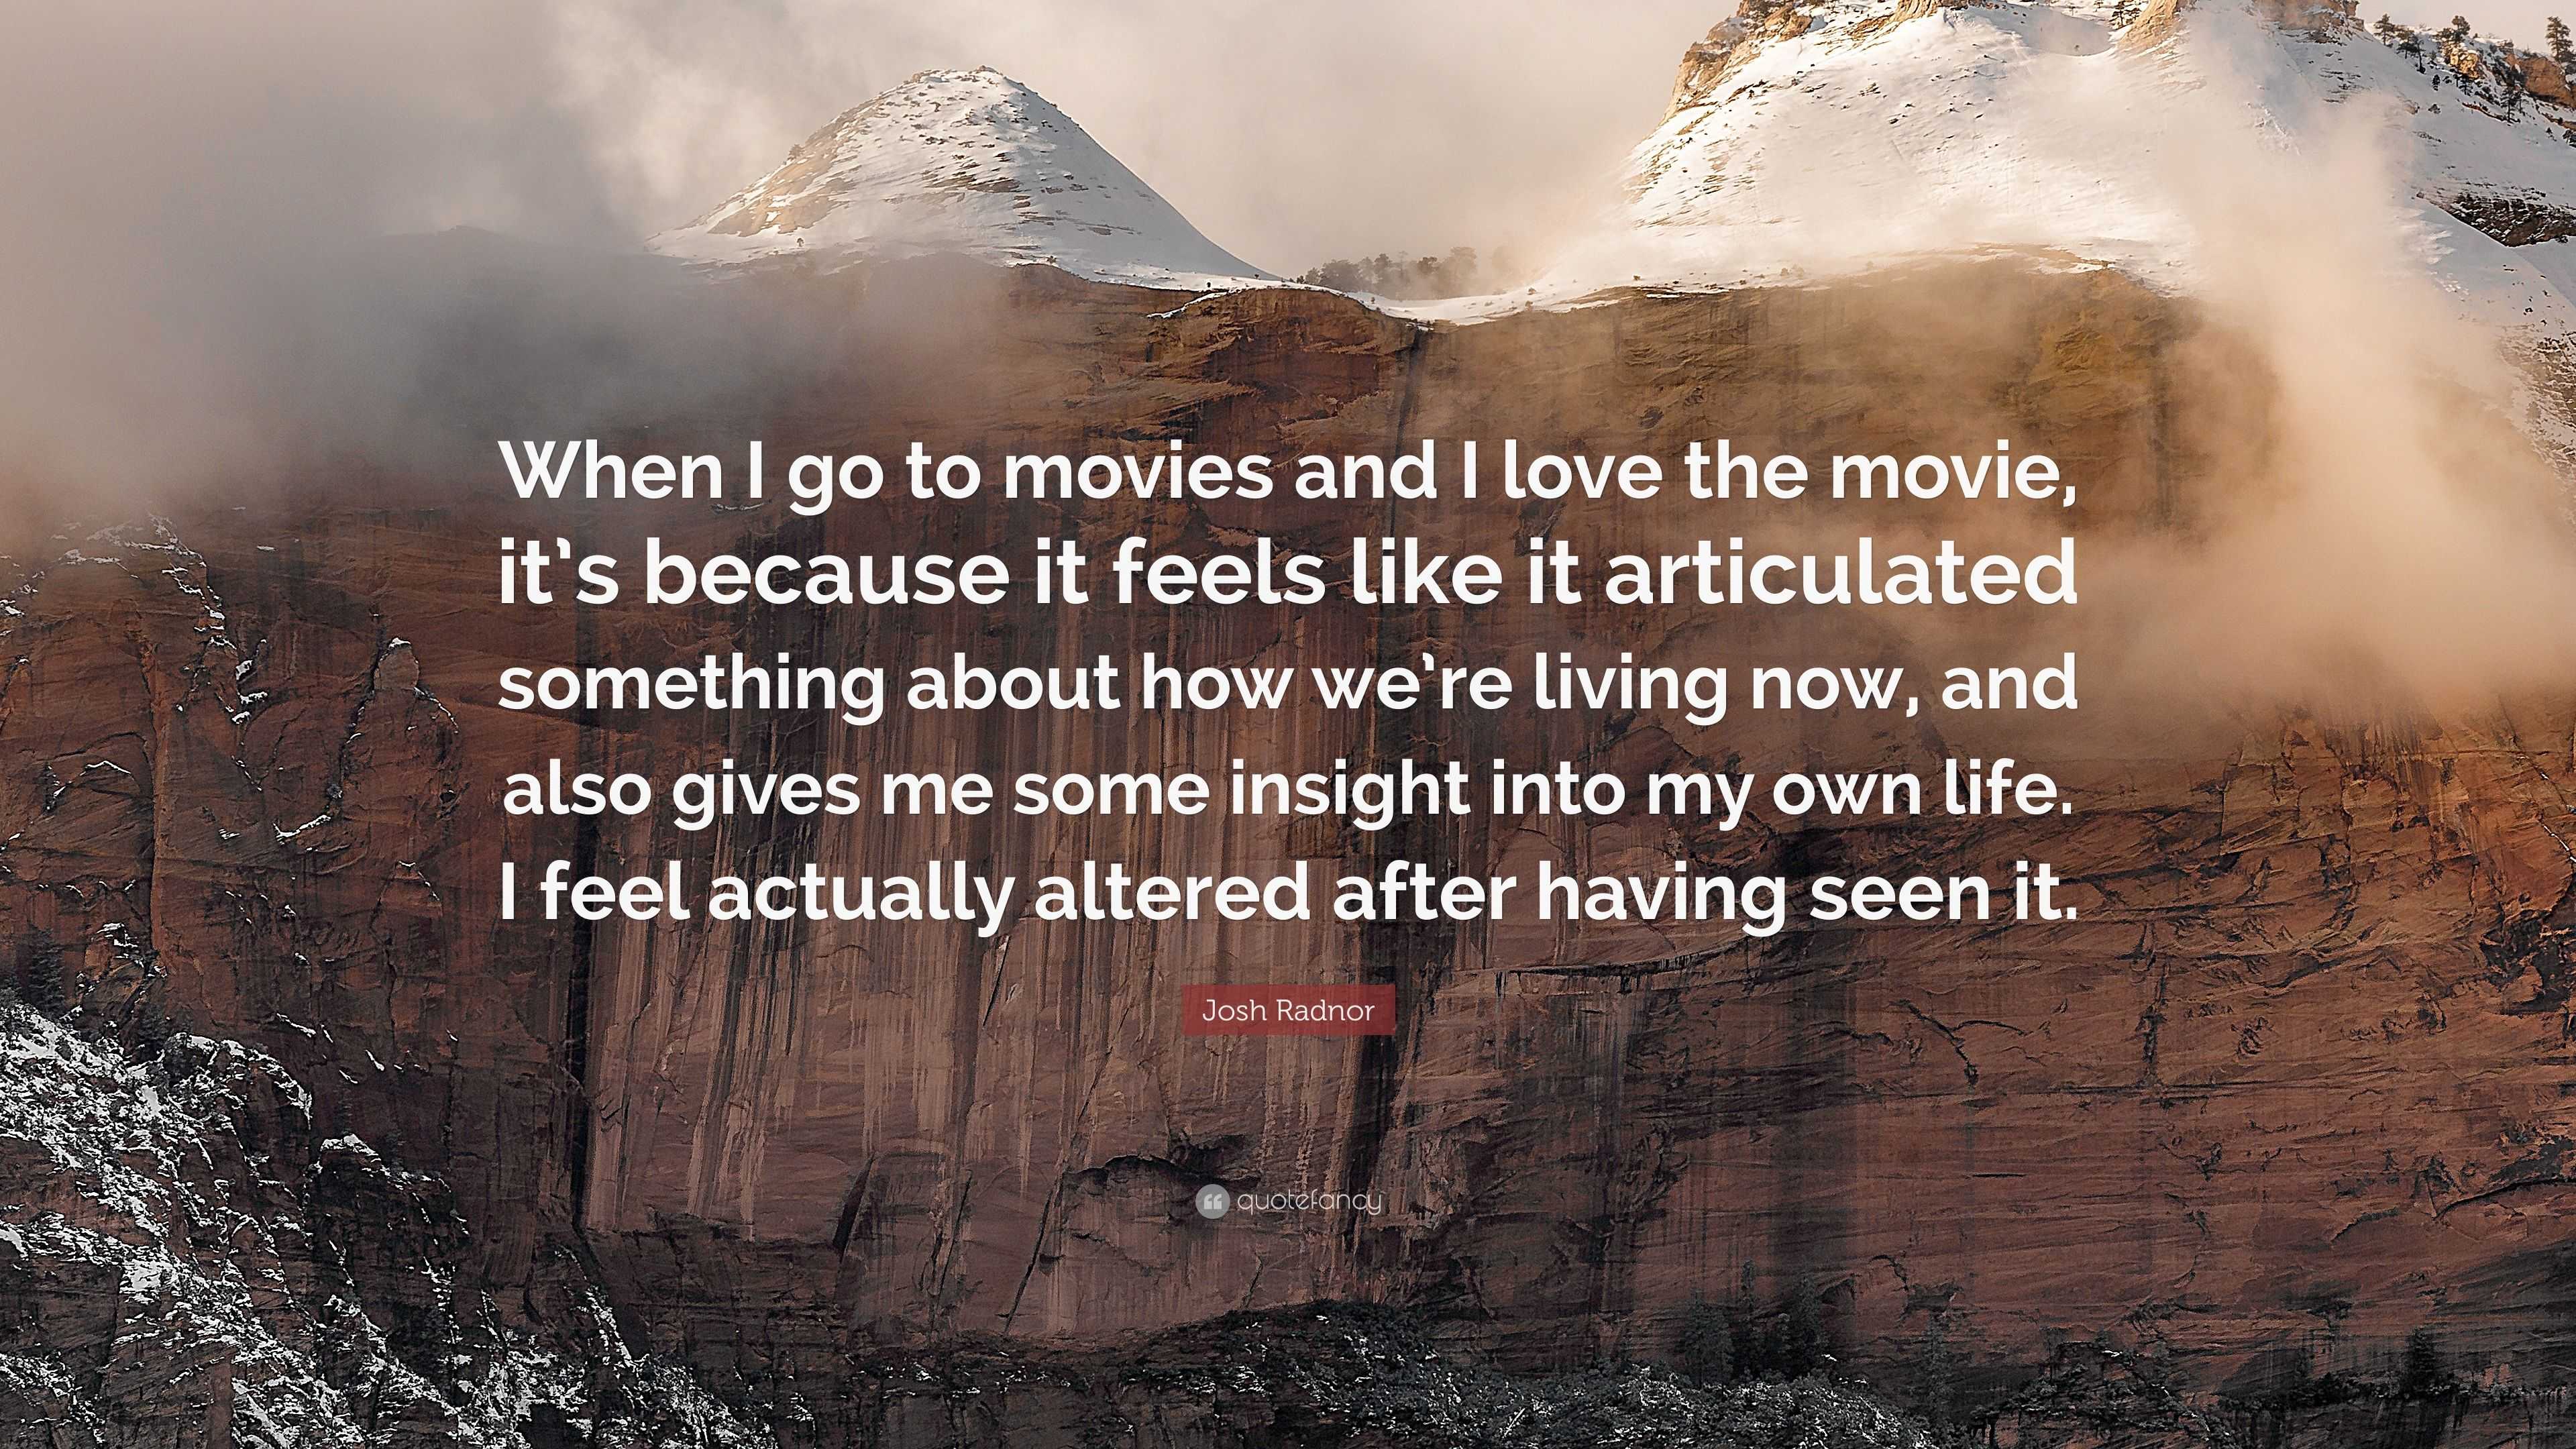 Josh Radnor Quote “When I go to movies and I love the movie